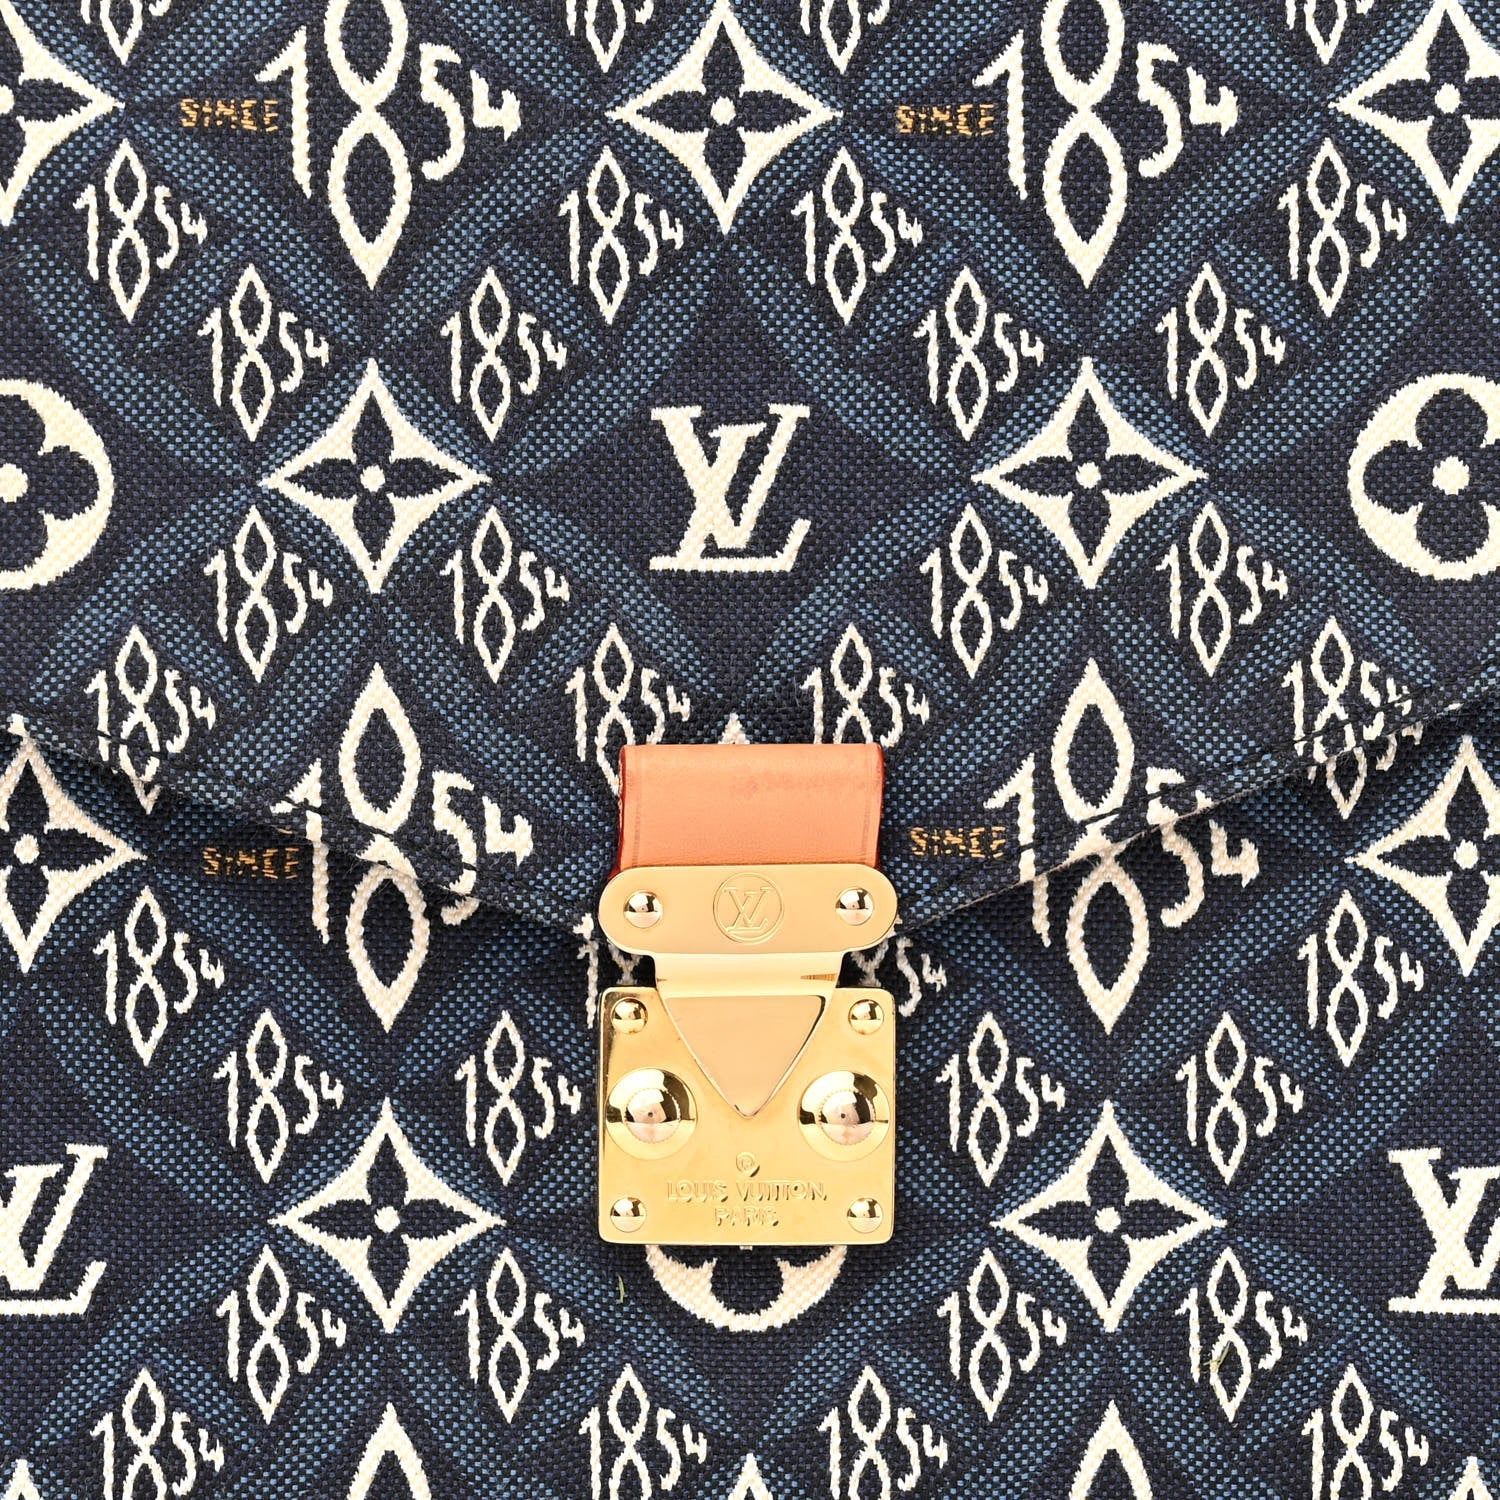 Louis Vuitton Dauphine Shoulder Bag Limited Edition Since 1854